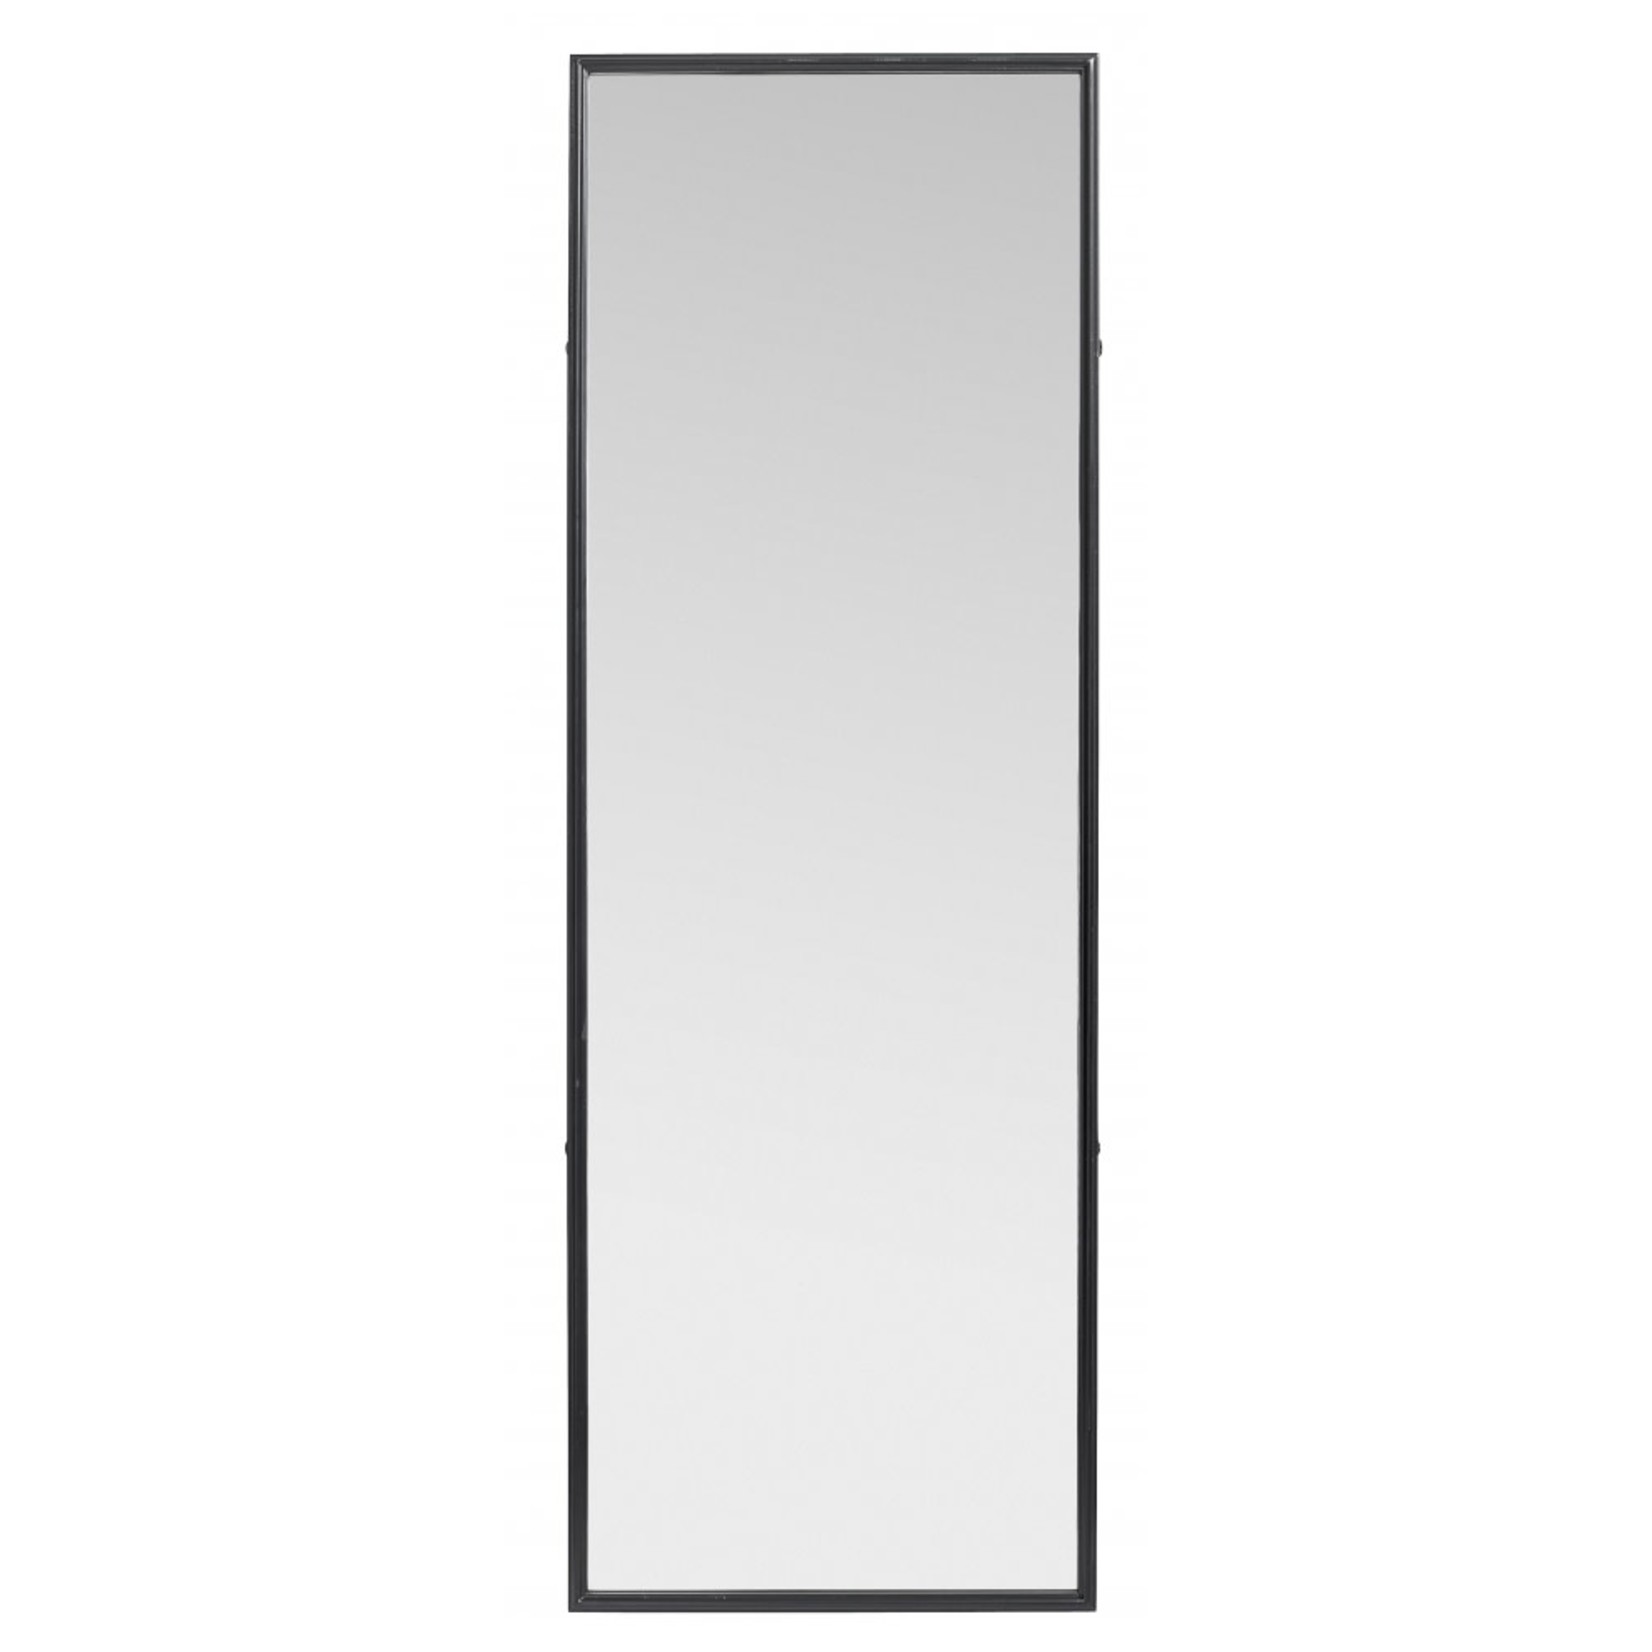 Spiegel 150x51cm schwarz